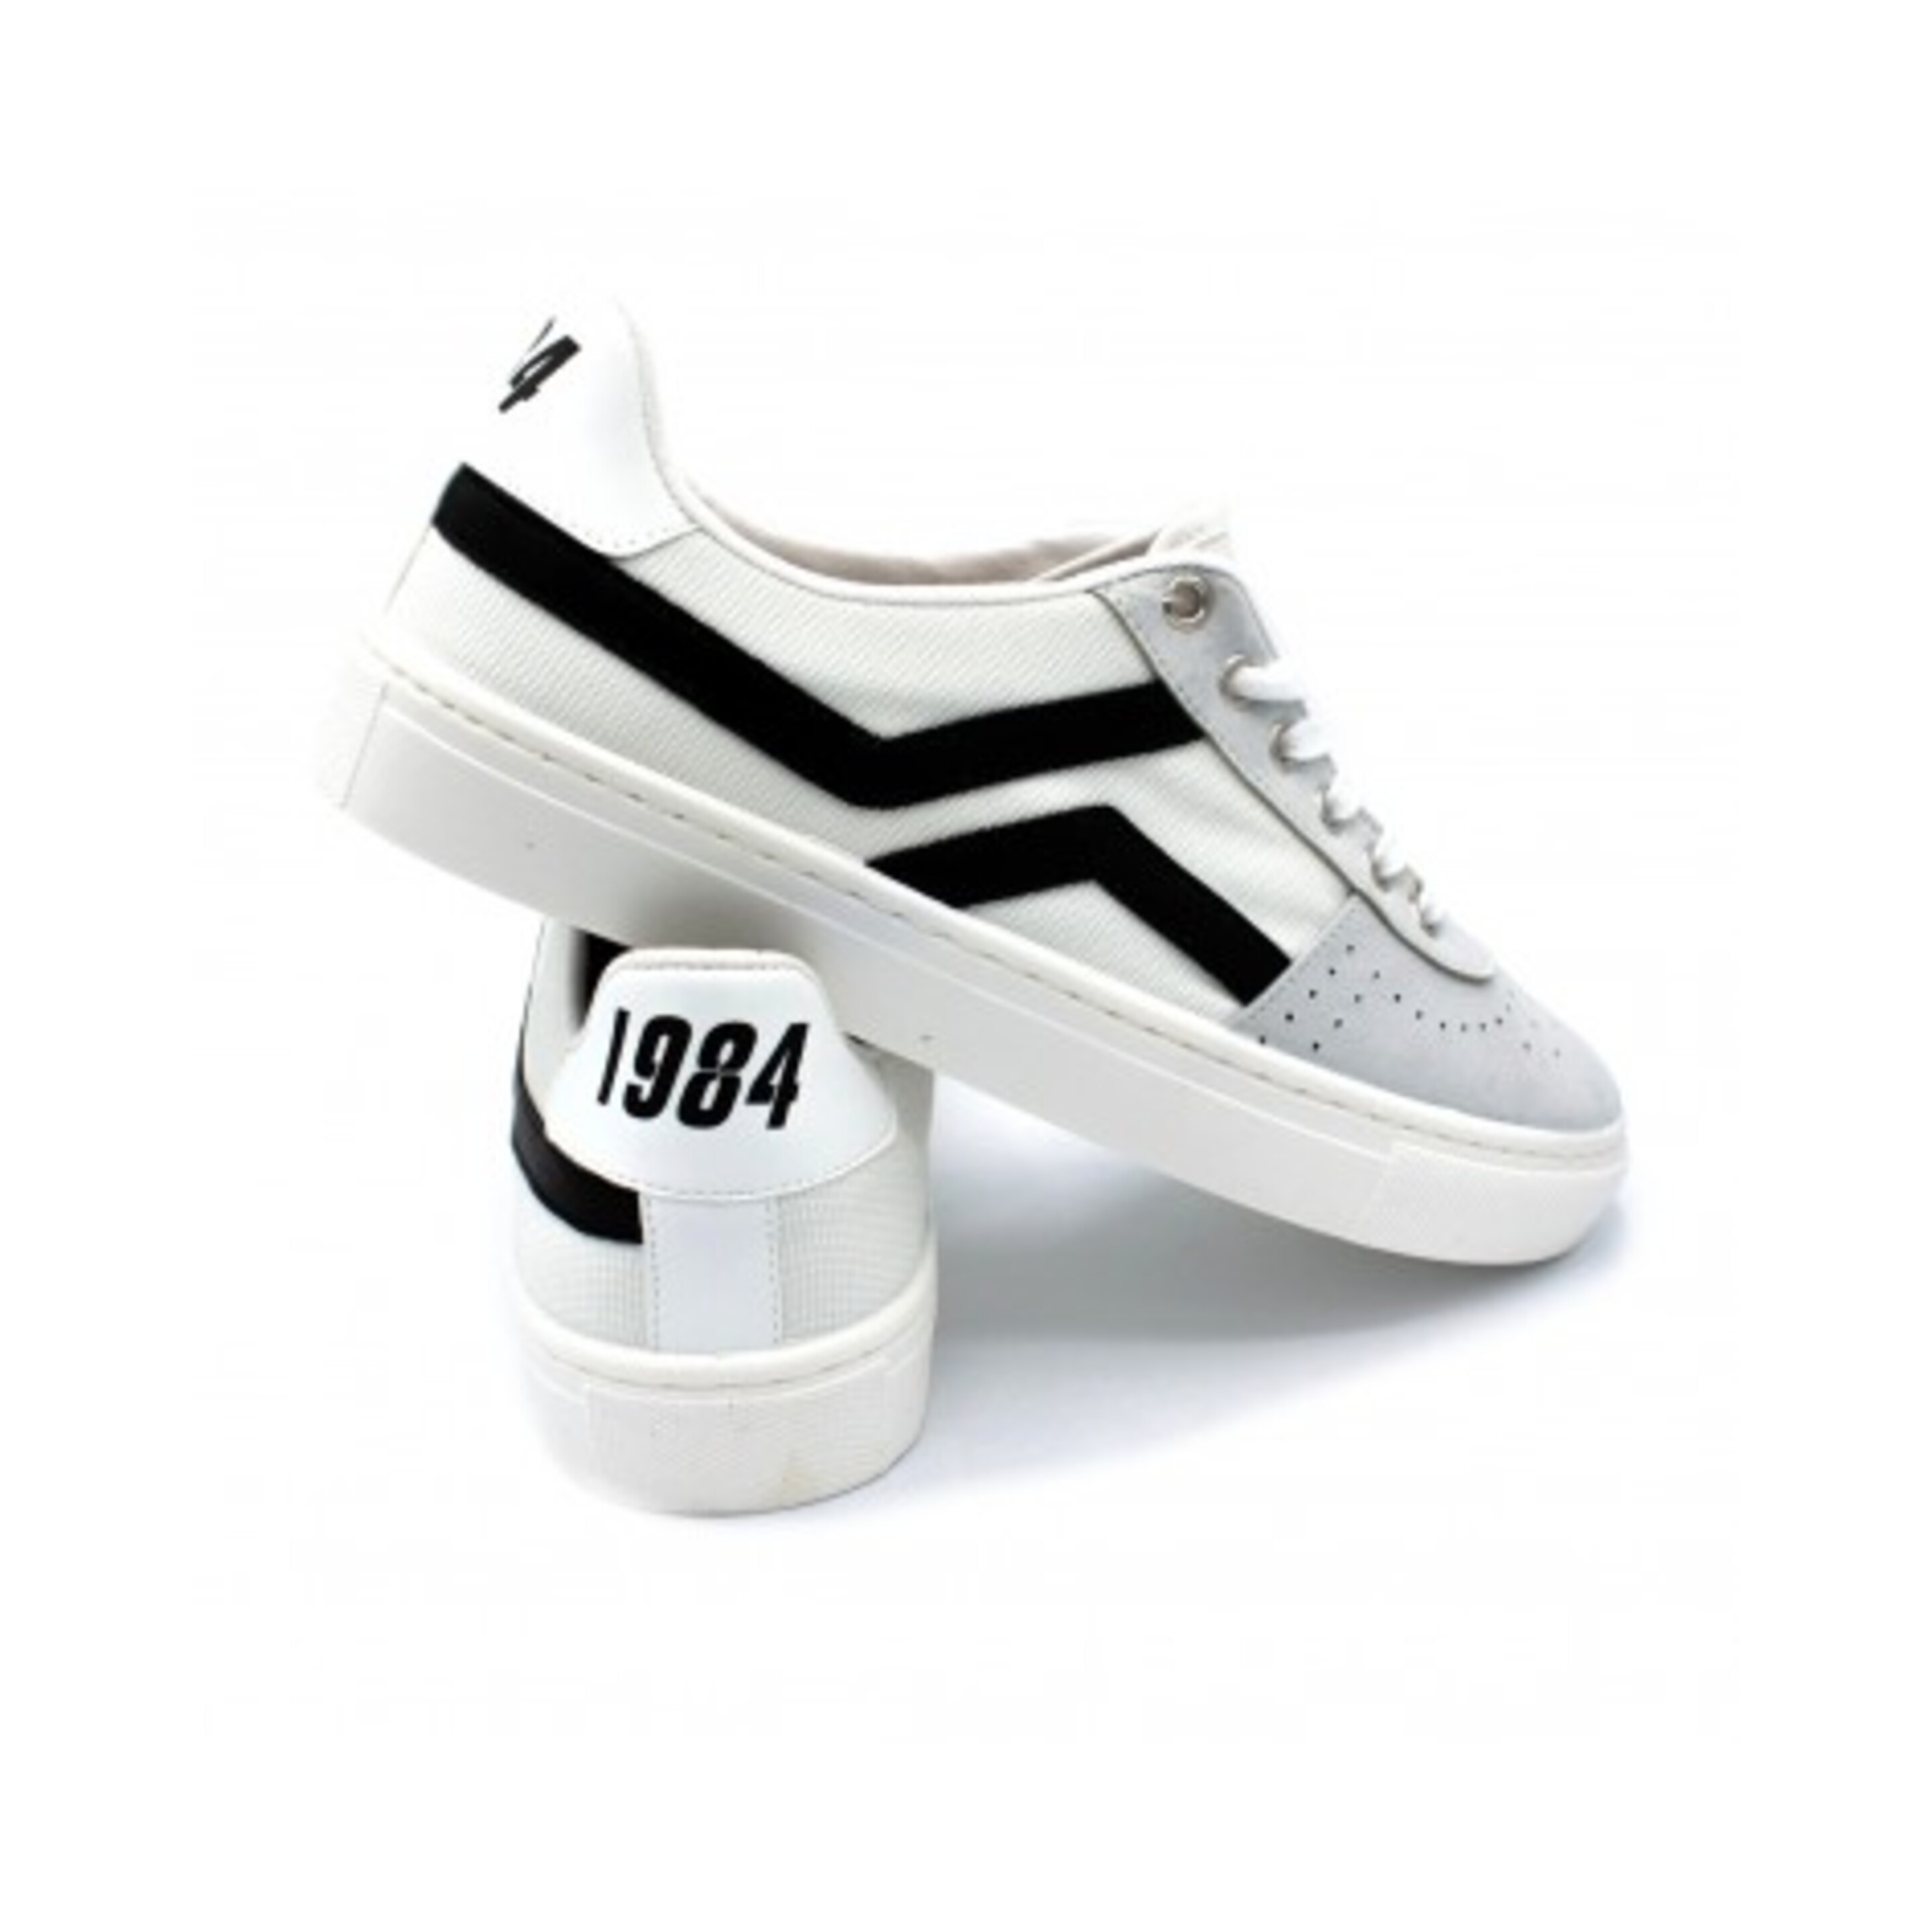 Sneaker Recykers 1984 - blanco/negro  MKP